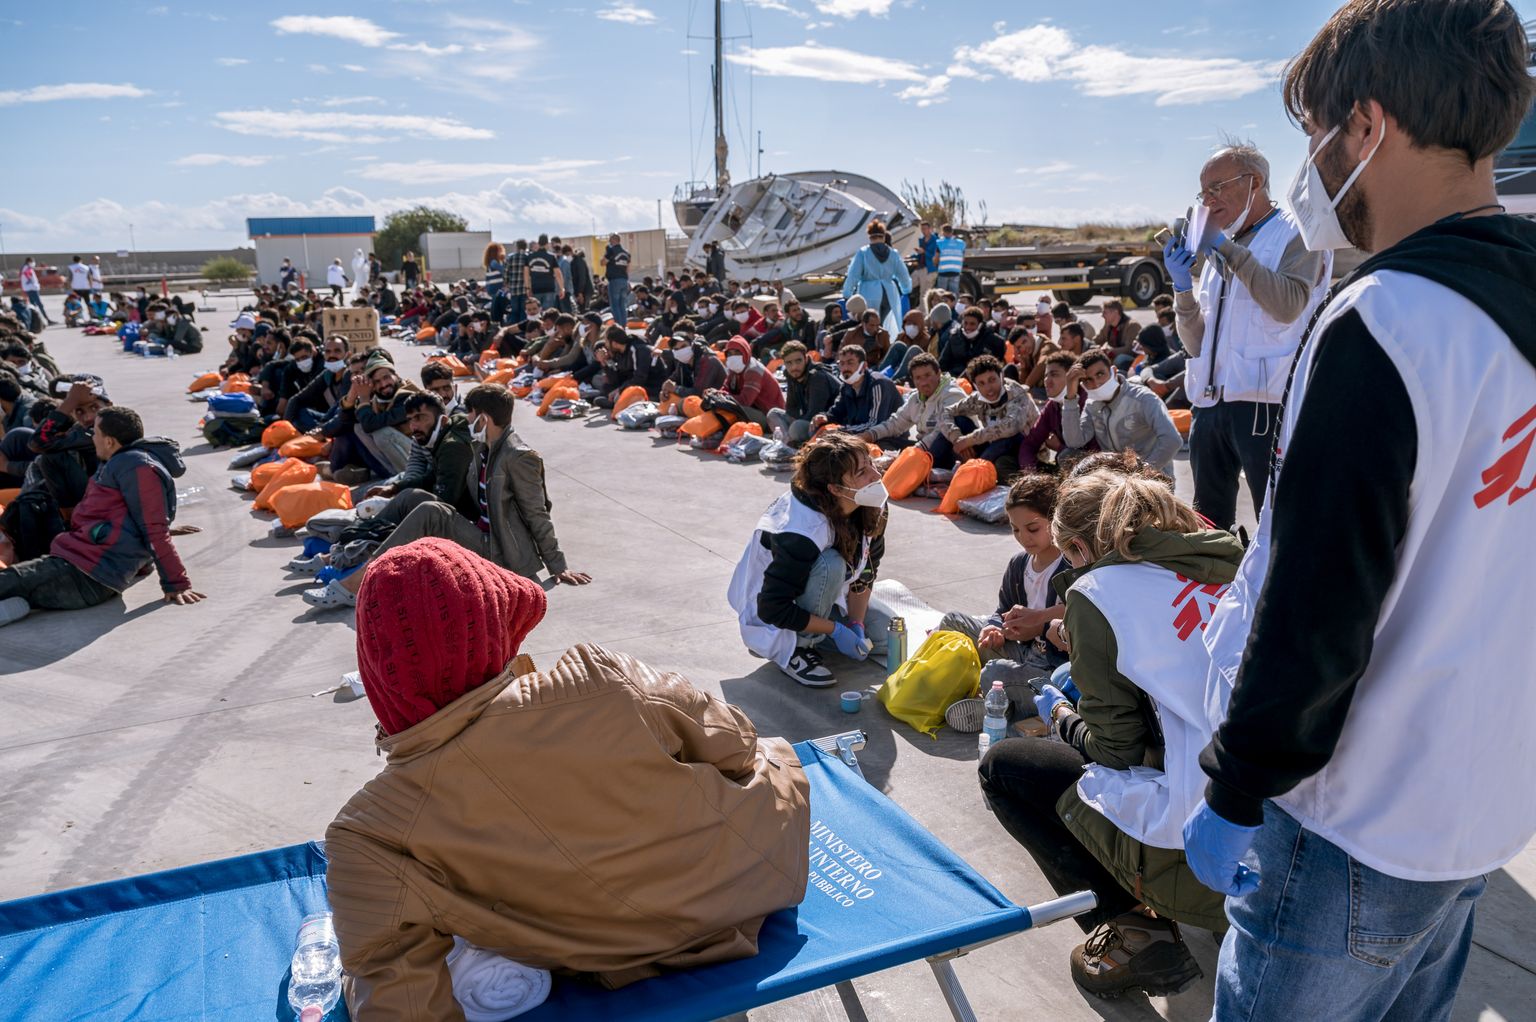 Liibüast Itaaliasse saabunud põgenikud sadamas pärast laevalt maale tulemist, 14. novembril 2022. a. Pilt on illustratiivne.